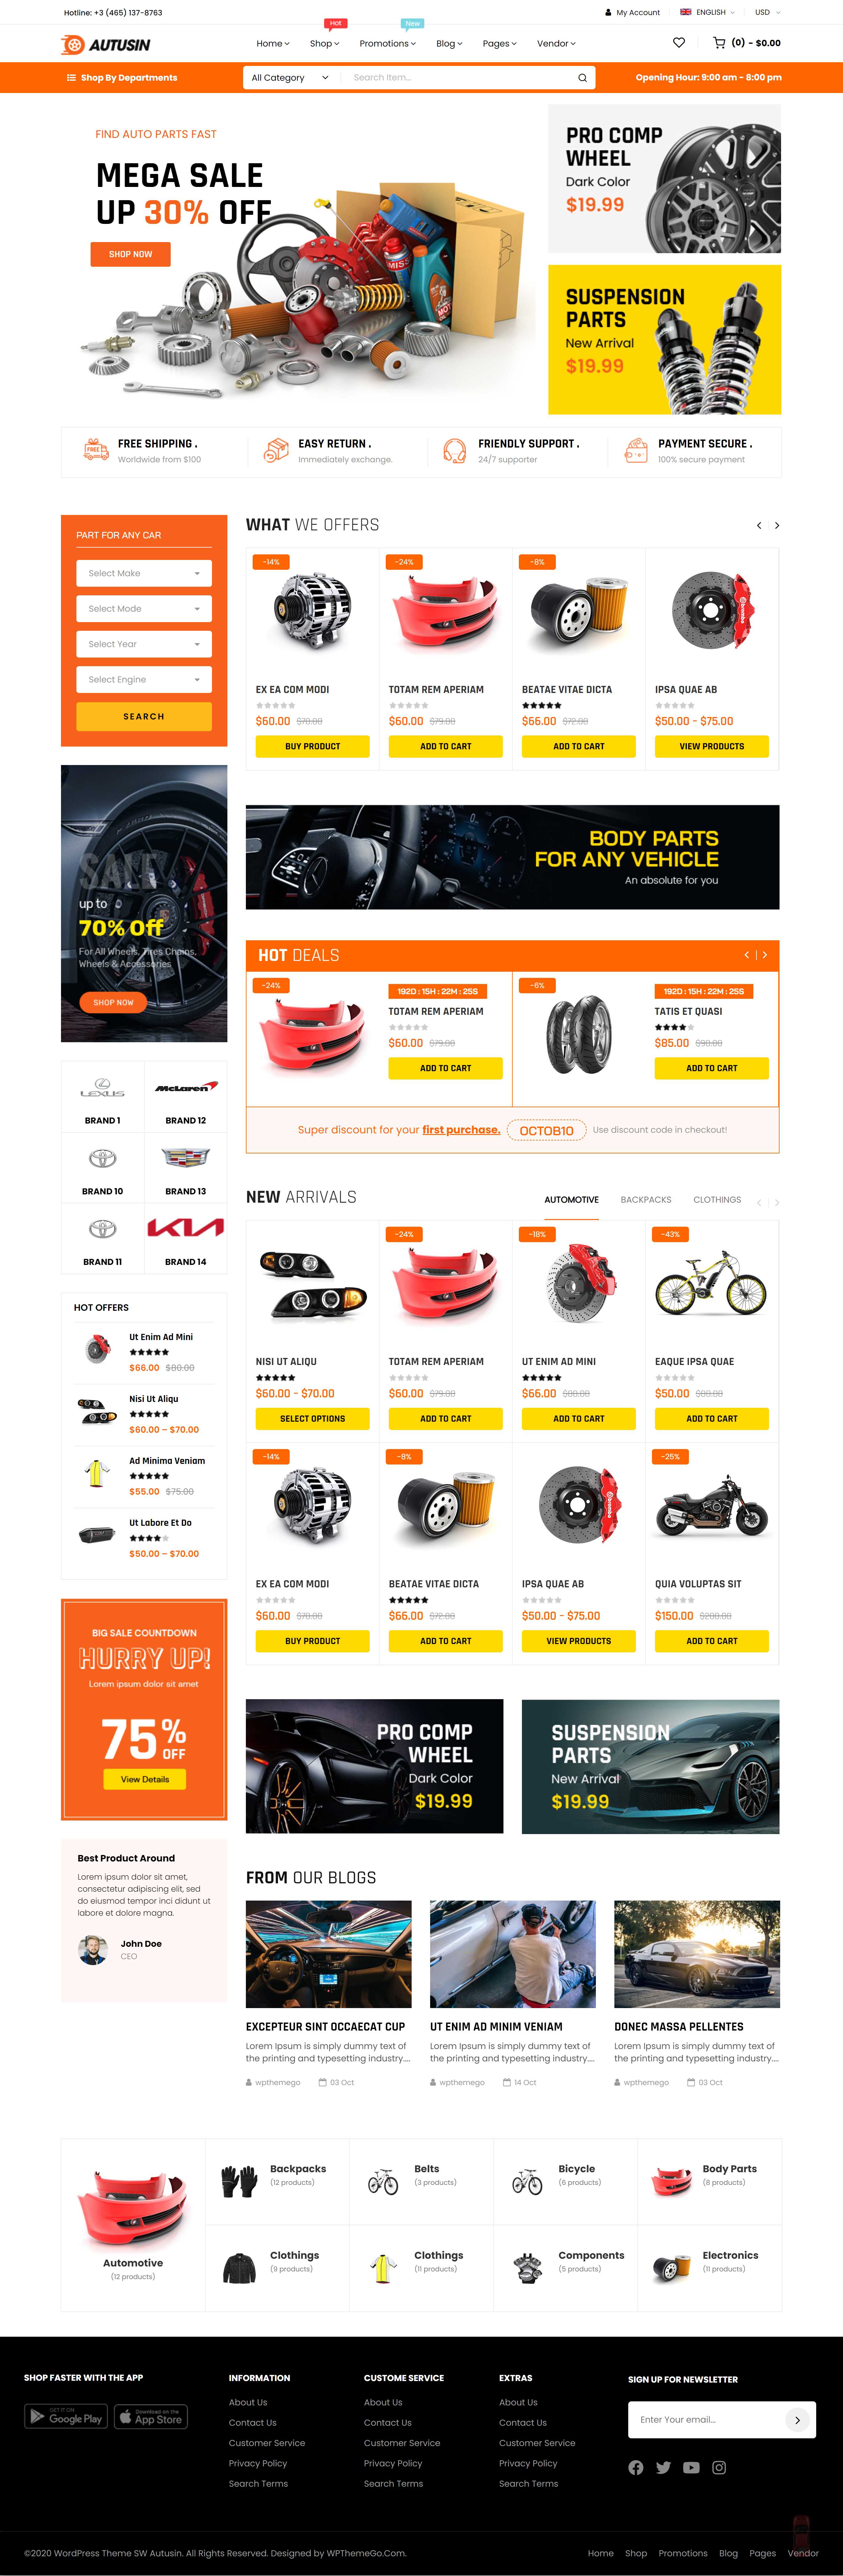 Mẫu thiết kế website showroom bán Phụ tùng, đồ chơi ô tô, xe máy đẹp 02  demo_wpthemego_com/themes/sw_autusin/demo7/home-page-17/